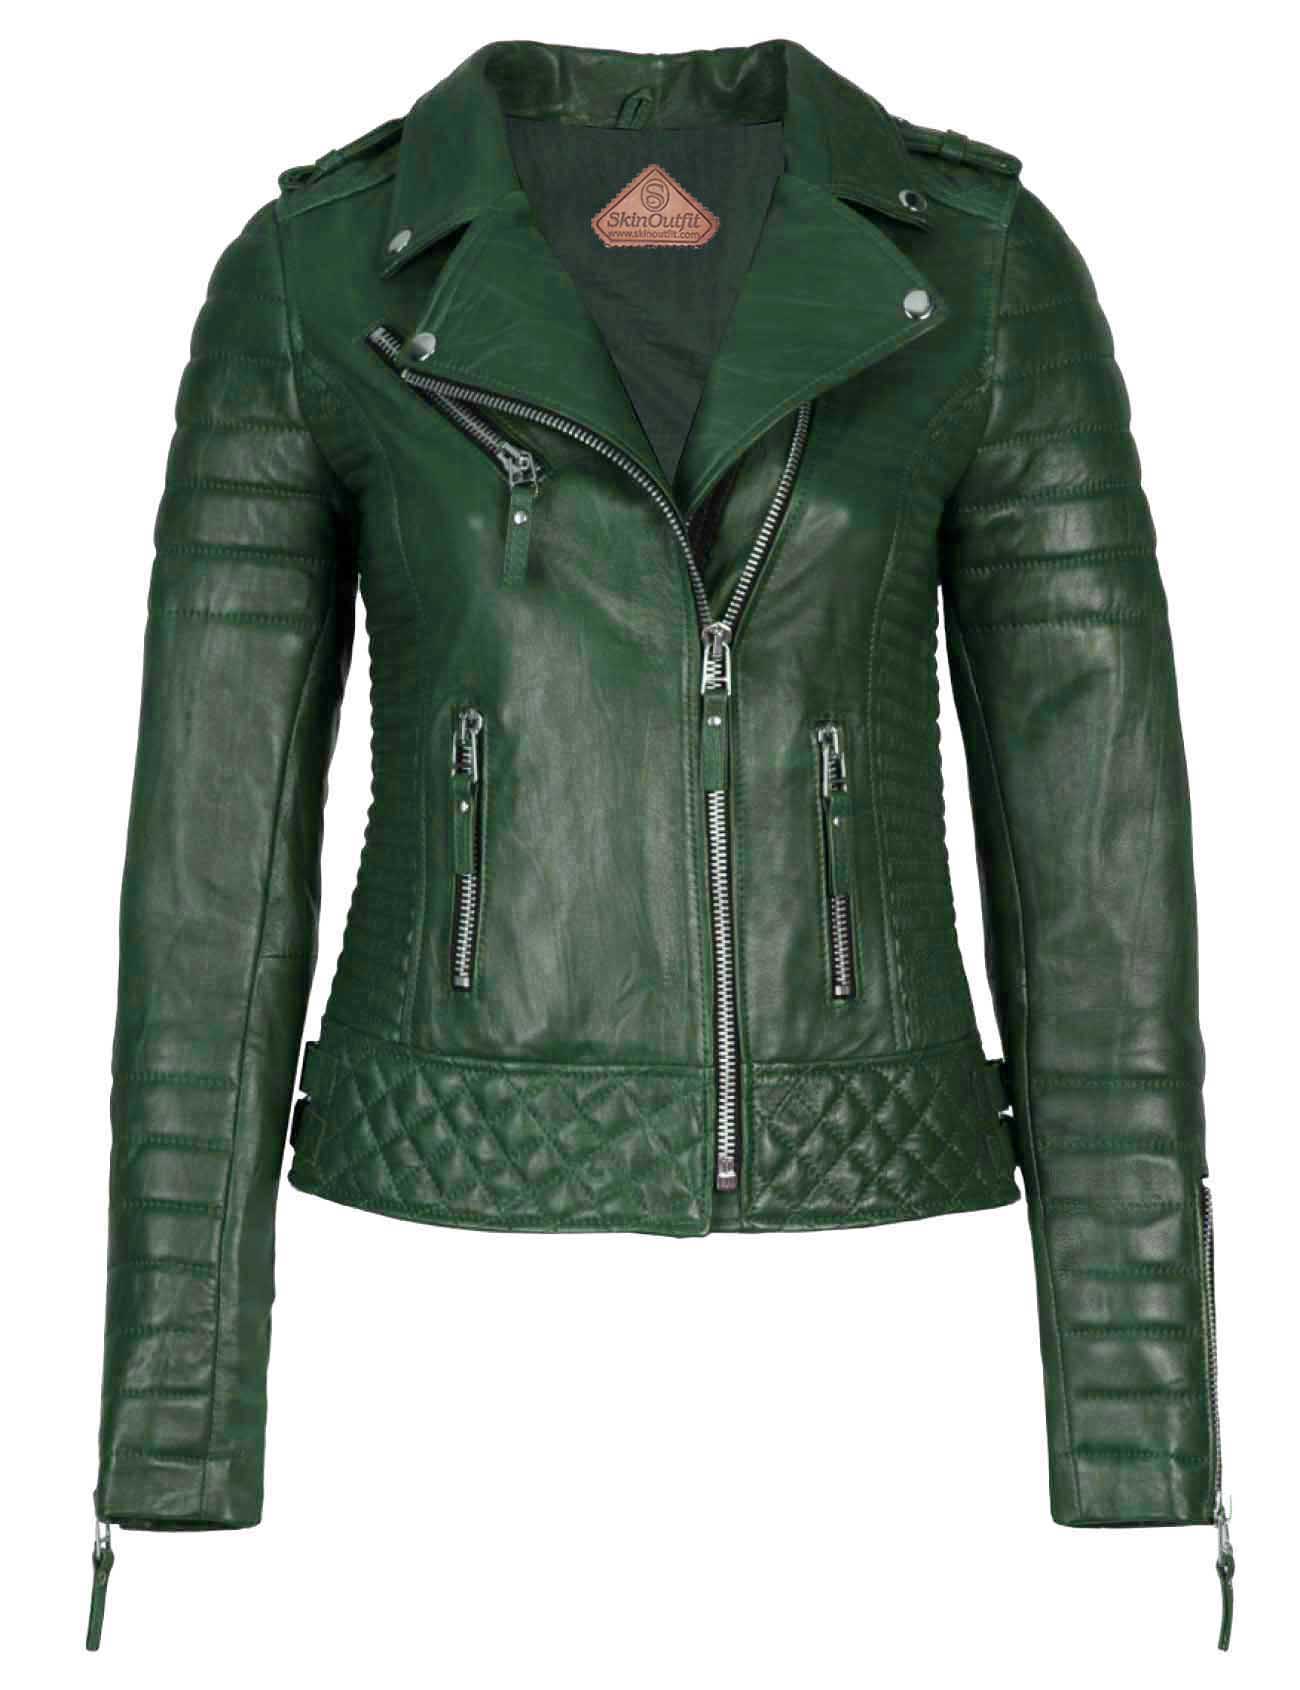 Skinoutfit Women's Biker Leather Jacket